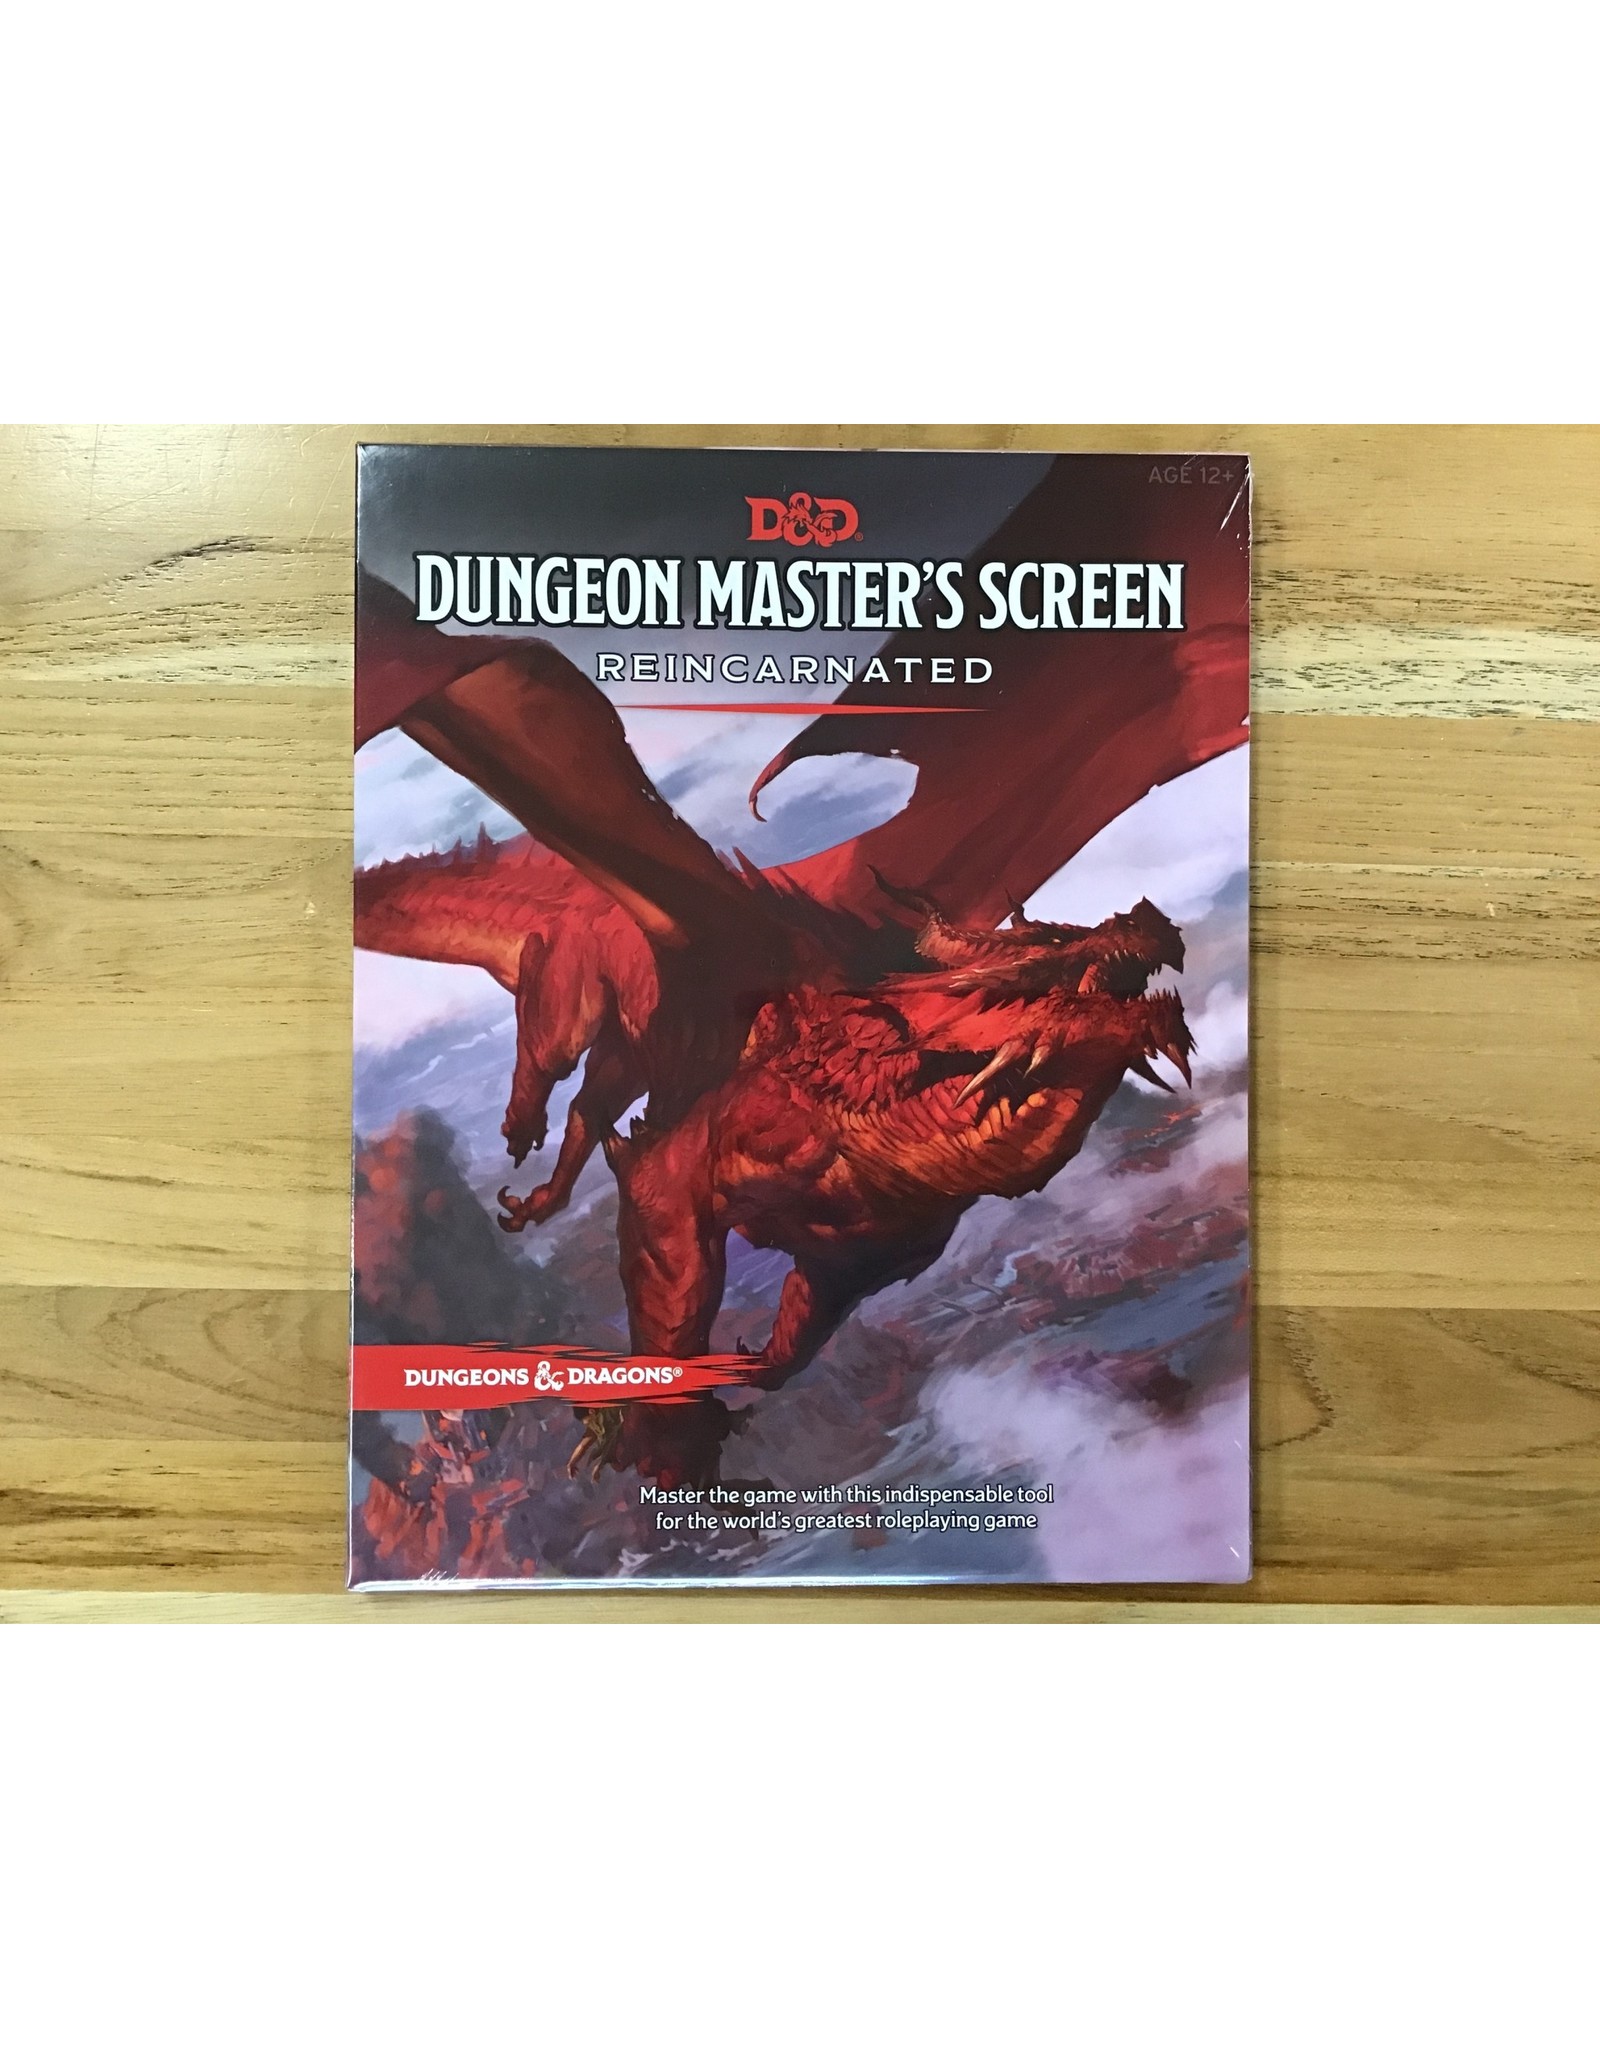 D&D Dungeon Master’s Screen - Reincarnated